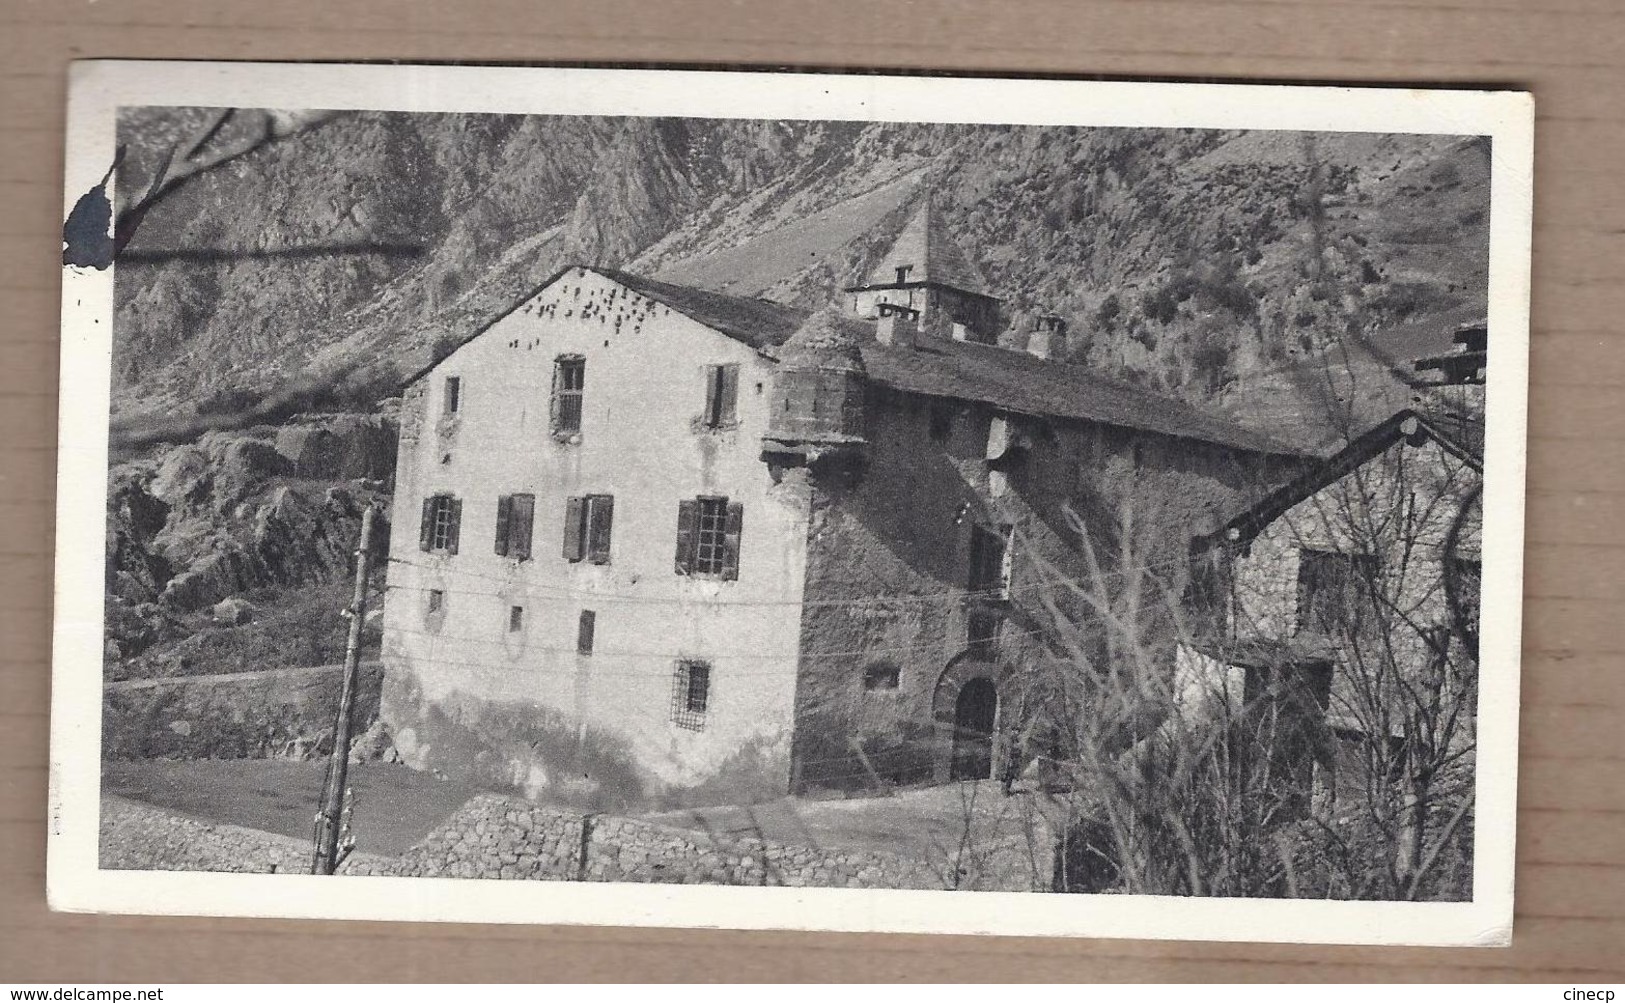 CPSM ANDORRE - La Maison Des Vallées - TB PLAN EDIFICE + TB Timbrers Verso + Publicité IONYL 1950 - Andorre